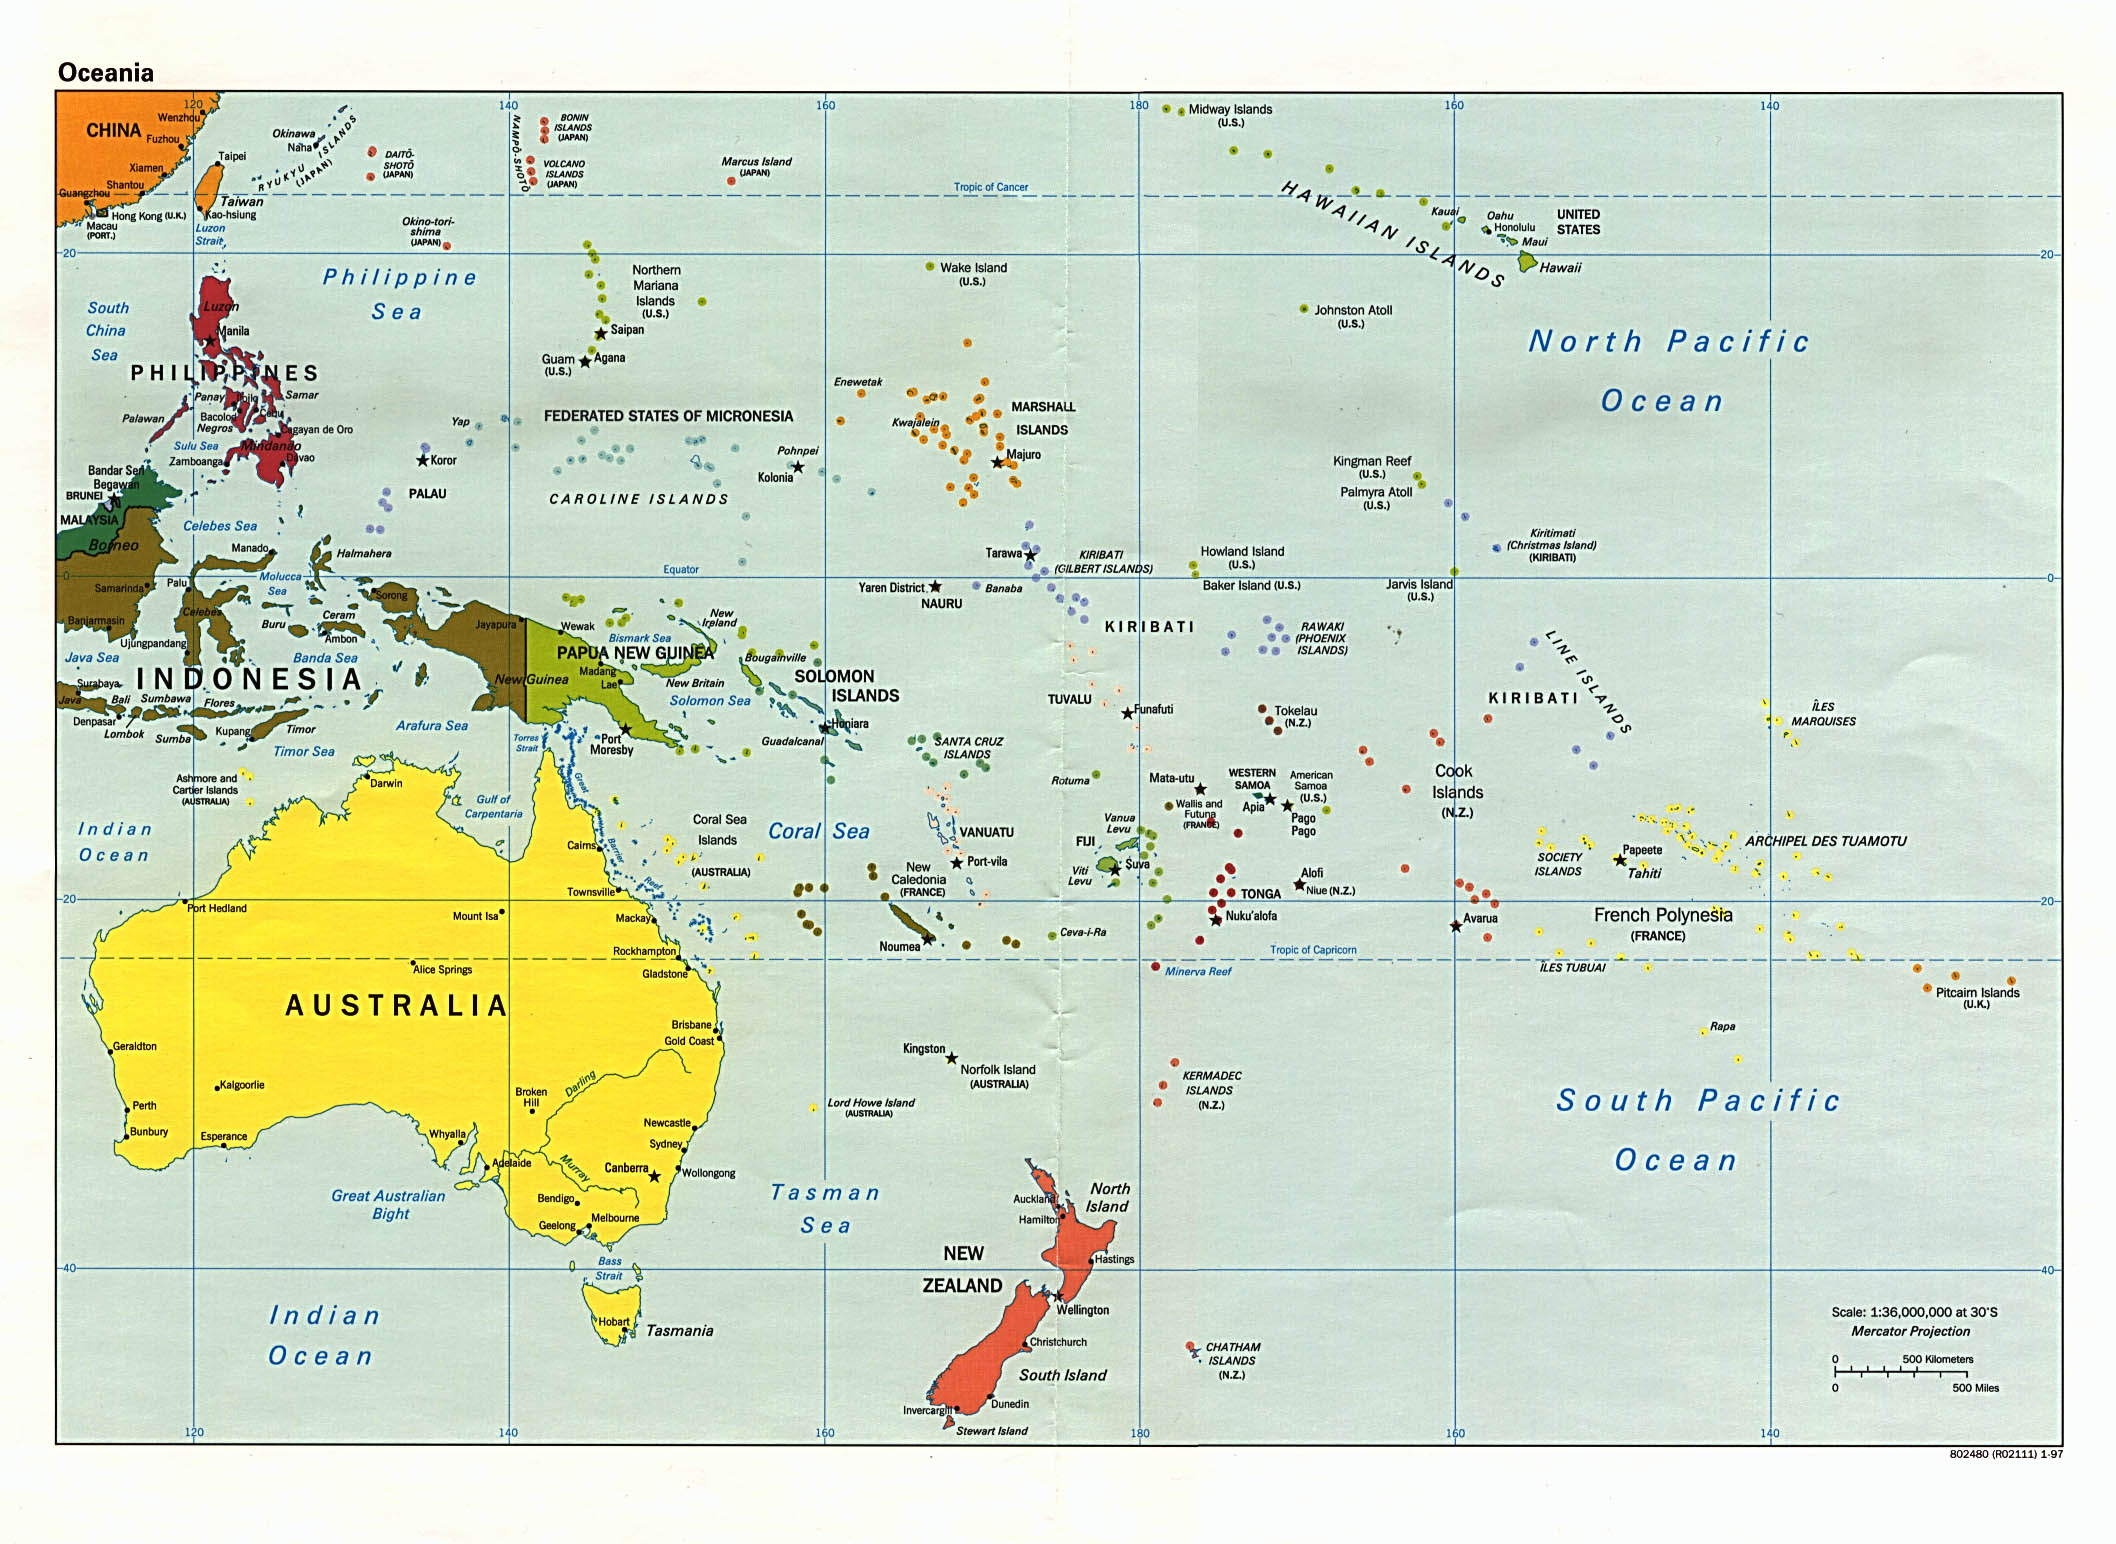 Mapa Politico de Oceanía 1997